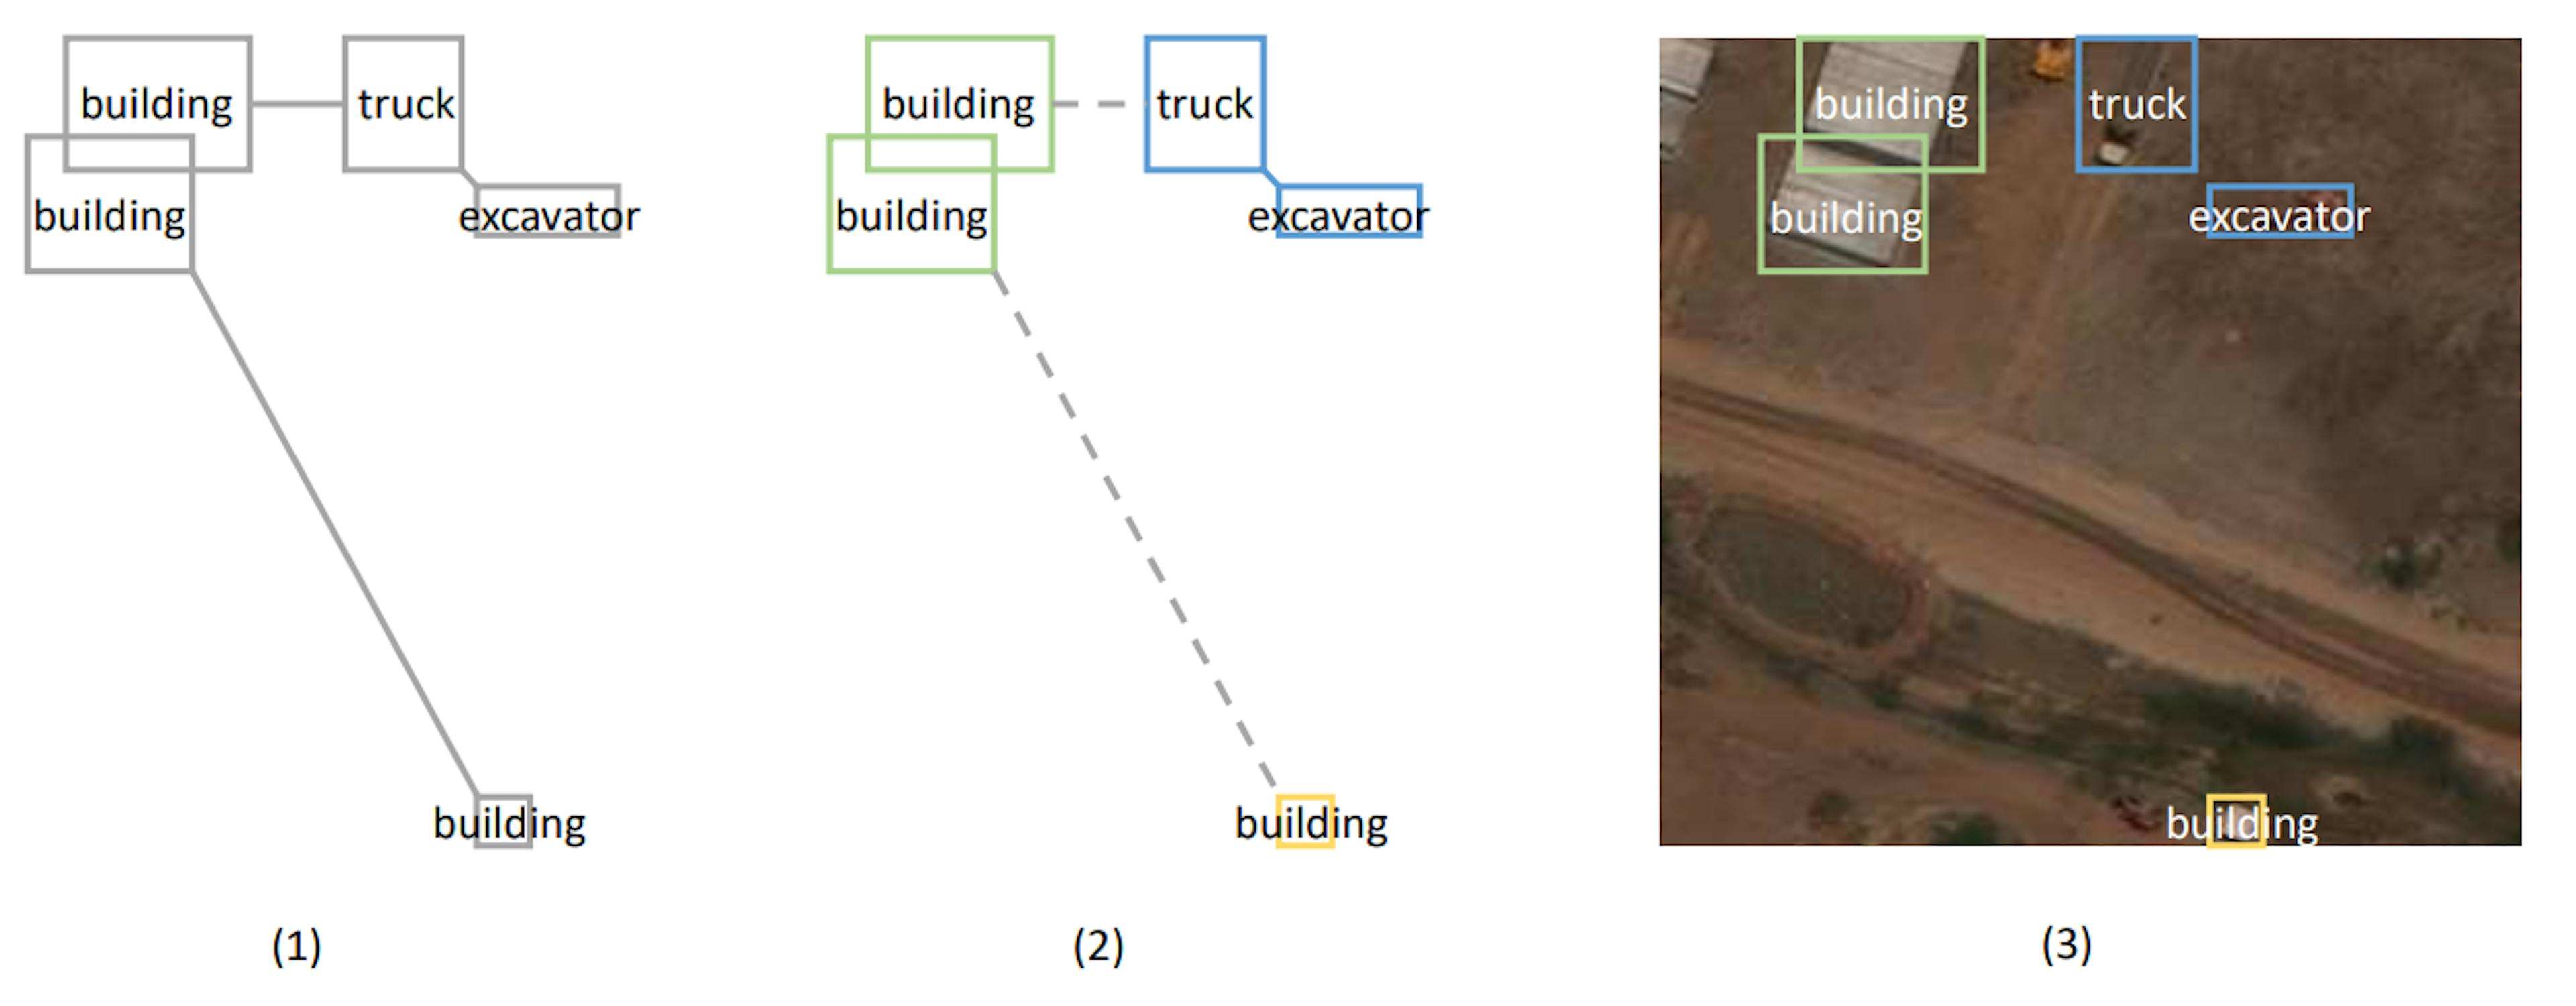 Hình 1: Minh họa thuật toán phân cụm dựa trên MST. Hình (1) biểu thị biểu đồ được tạo biểu thị cây bao trùm tối thiểu. Chiều dài bổ sung được thêm vào khoảng cách giữa các đối tượng thuộc các loại khác nhau. Hình (2) cho thấy các cụm được hình thành bằng cách cắt các cạnh dài. Hình (3) chiếu vị trí của các vật thể lên ảnh thật.